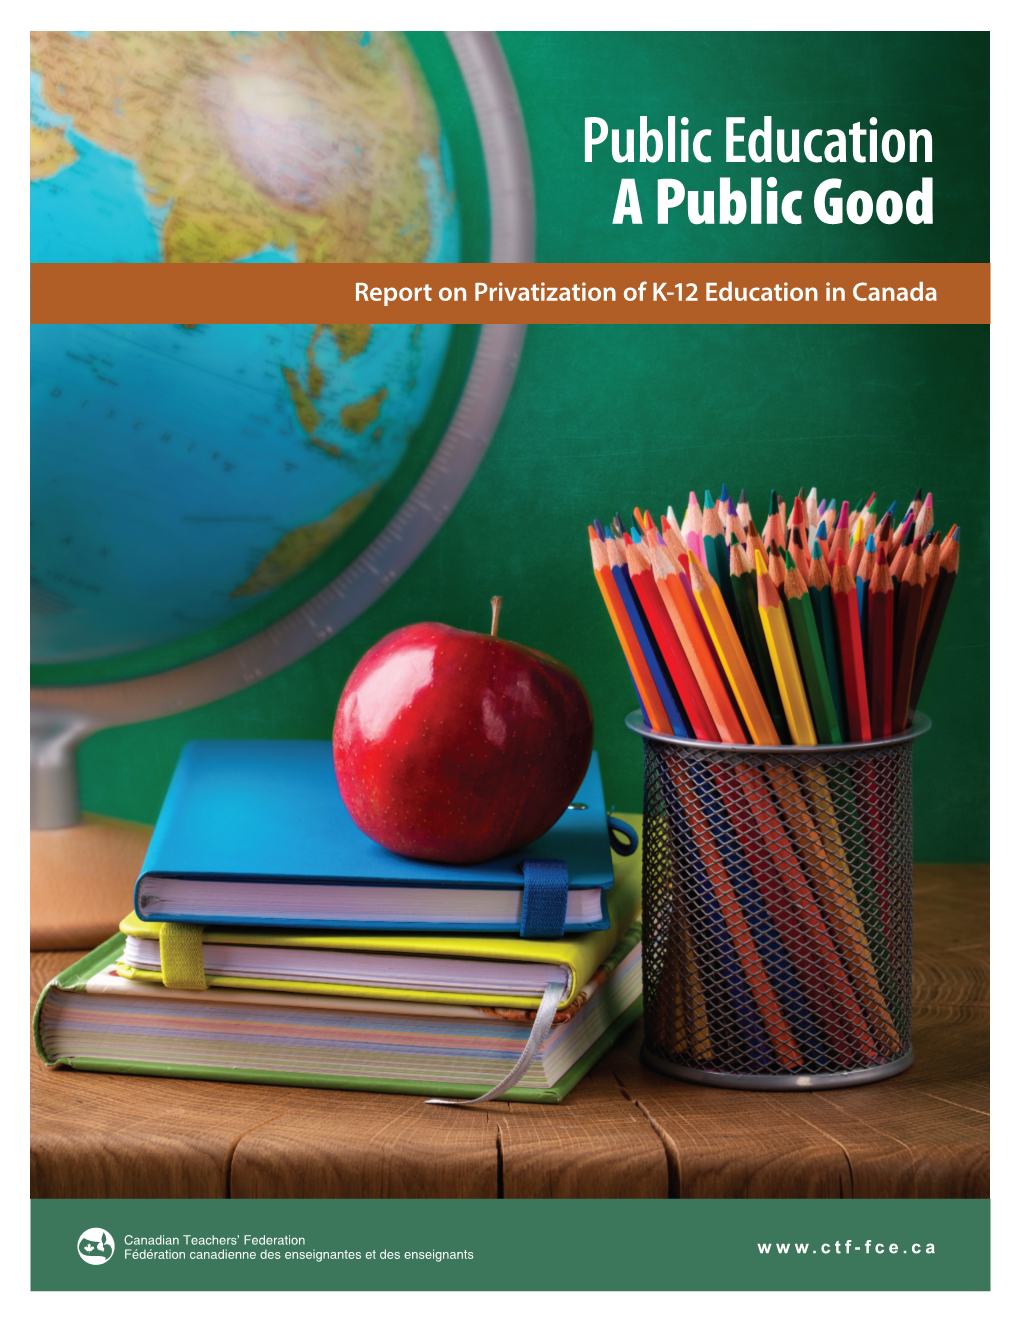 Public Education a Public Good